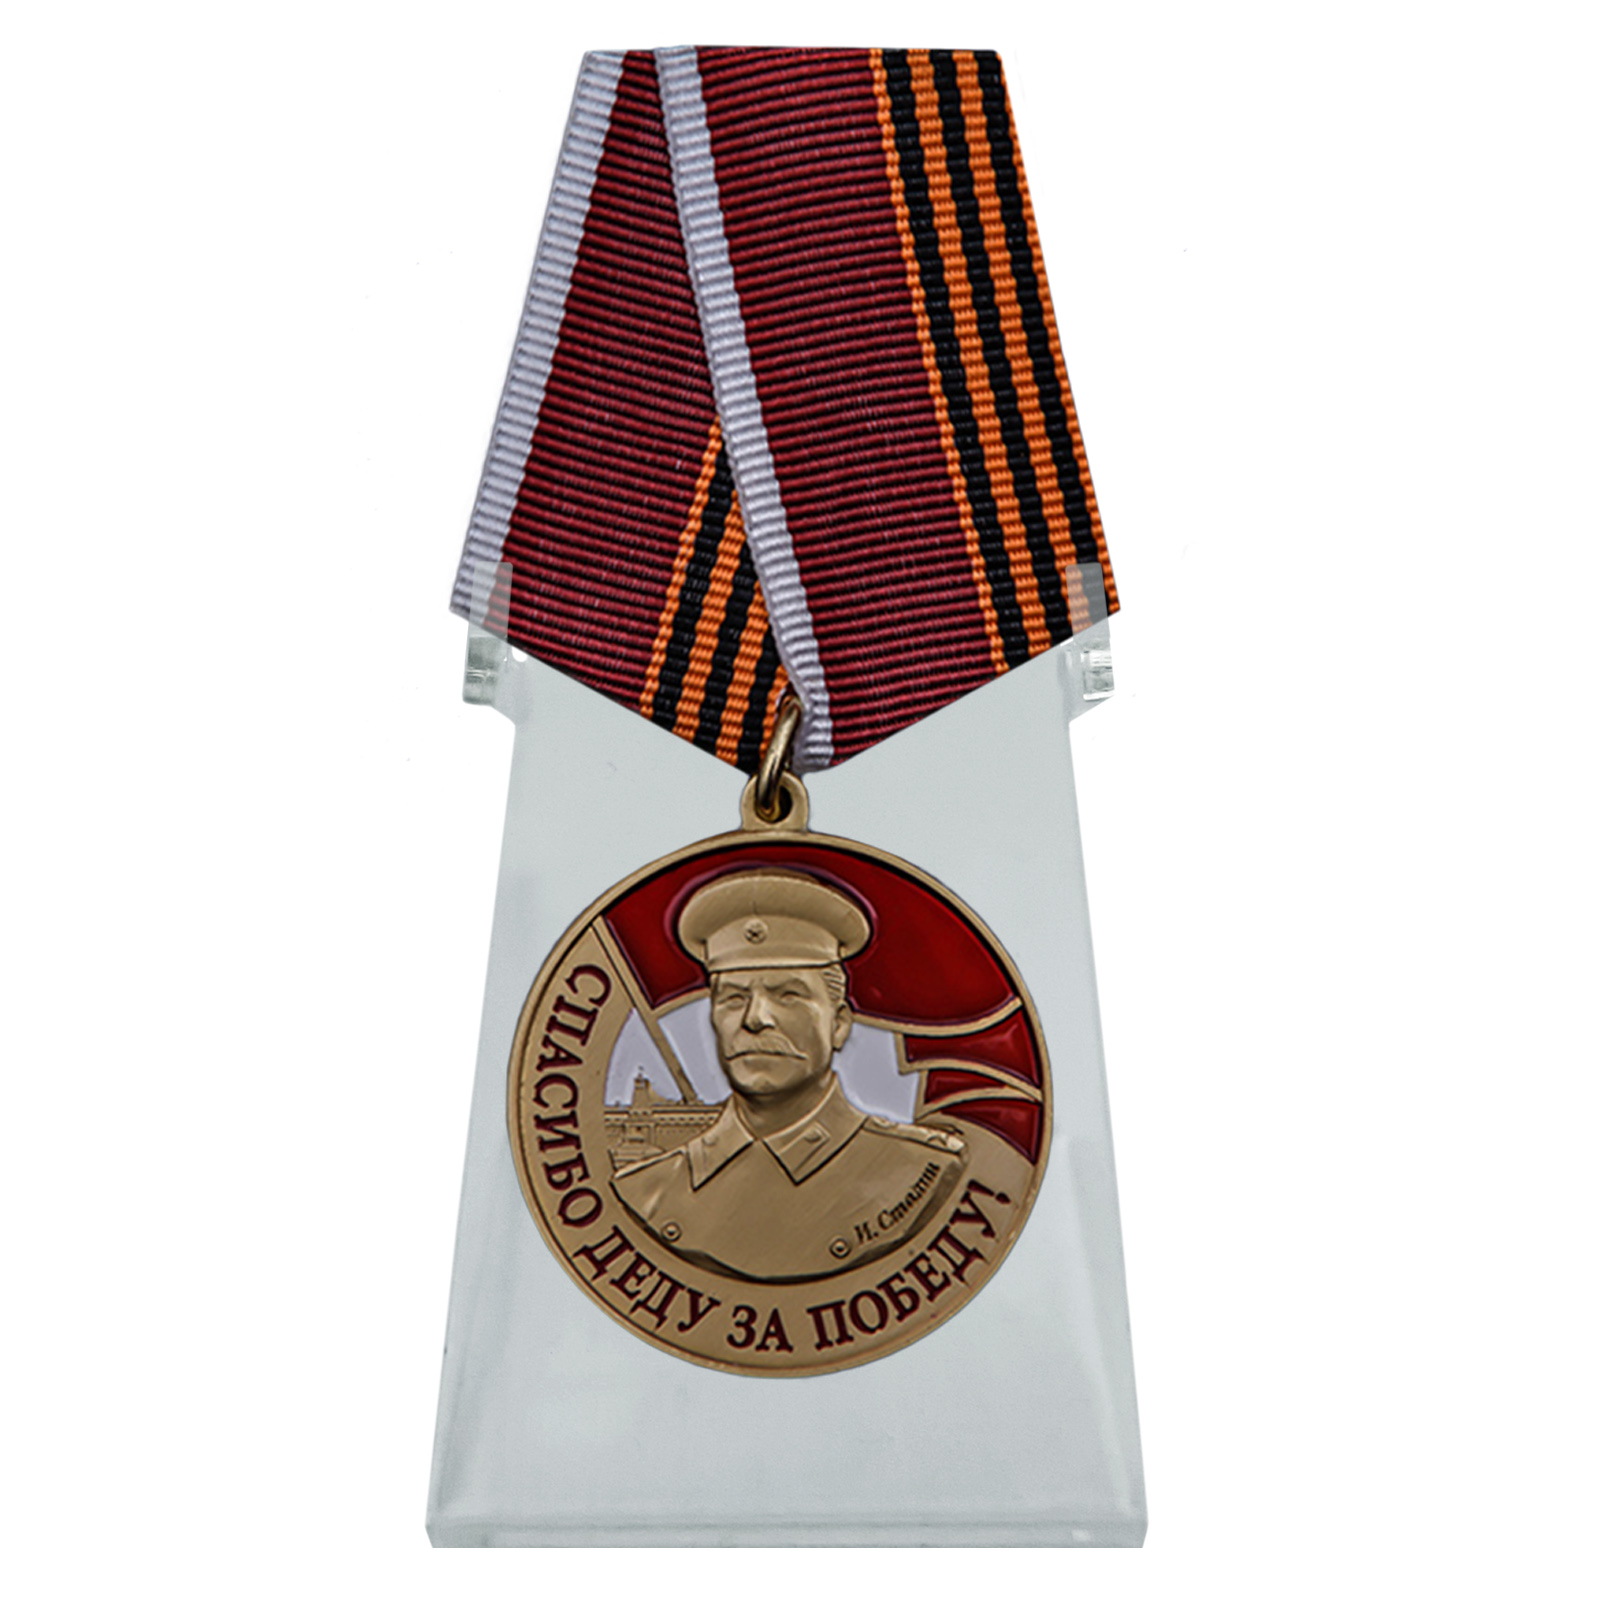 Купить медаль со Сталиным Спасибо деду за Победу на подставке онлайн